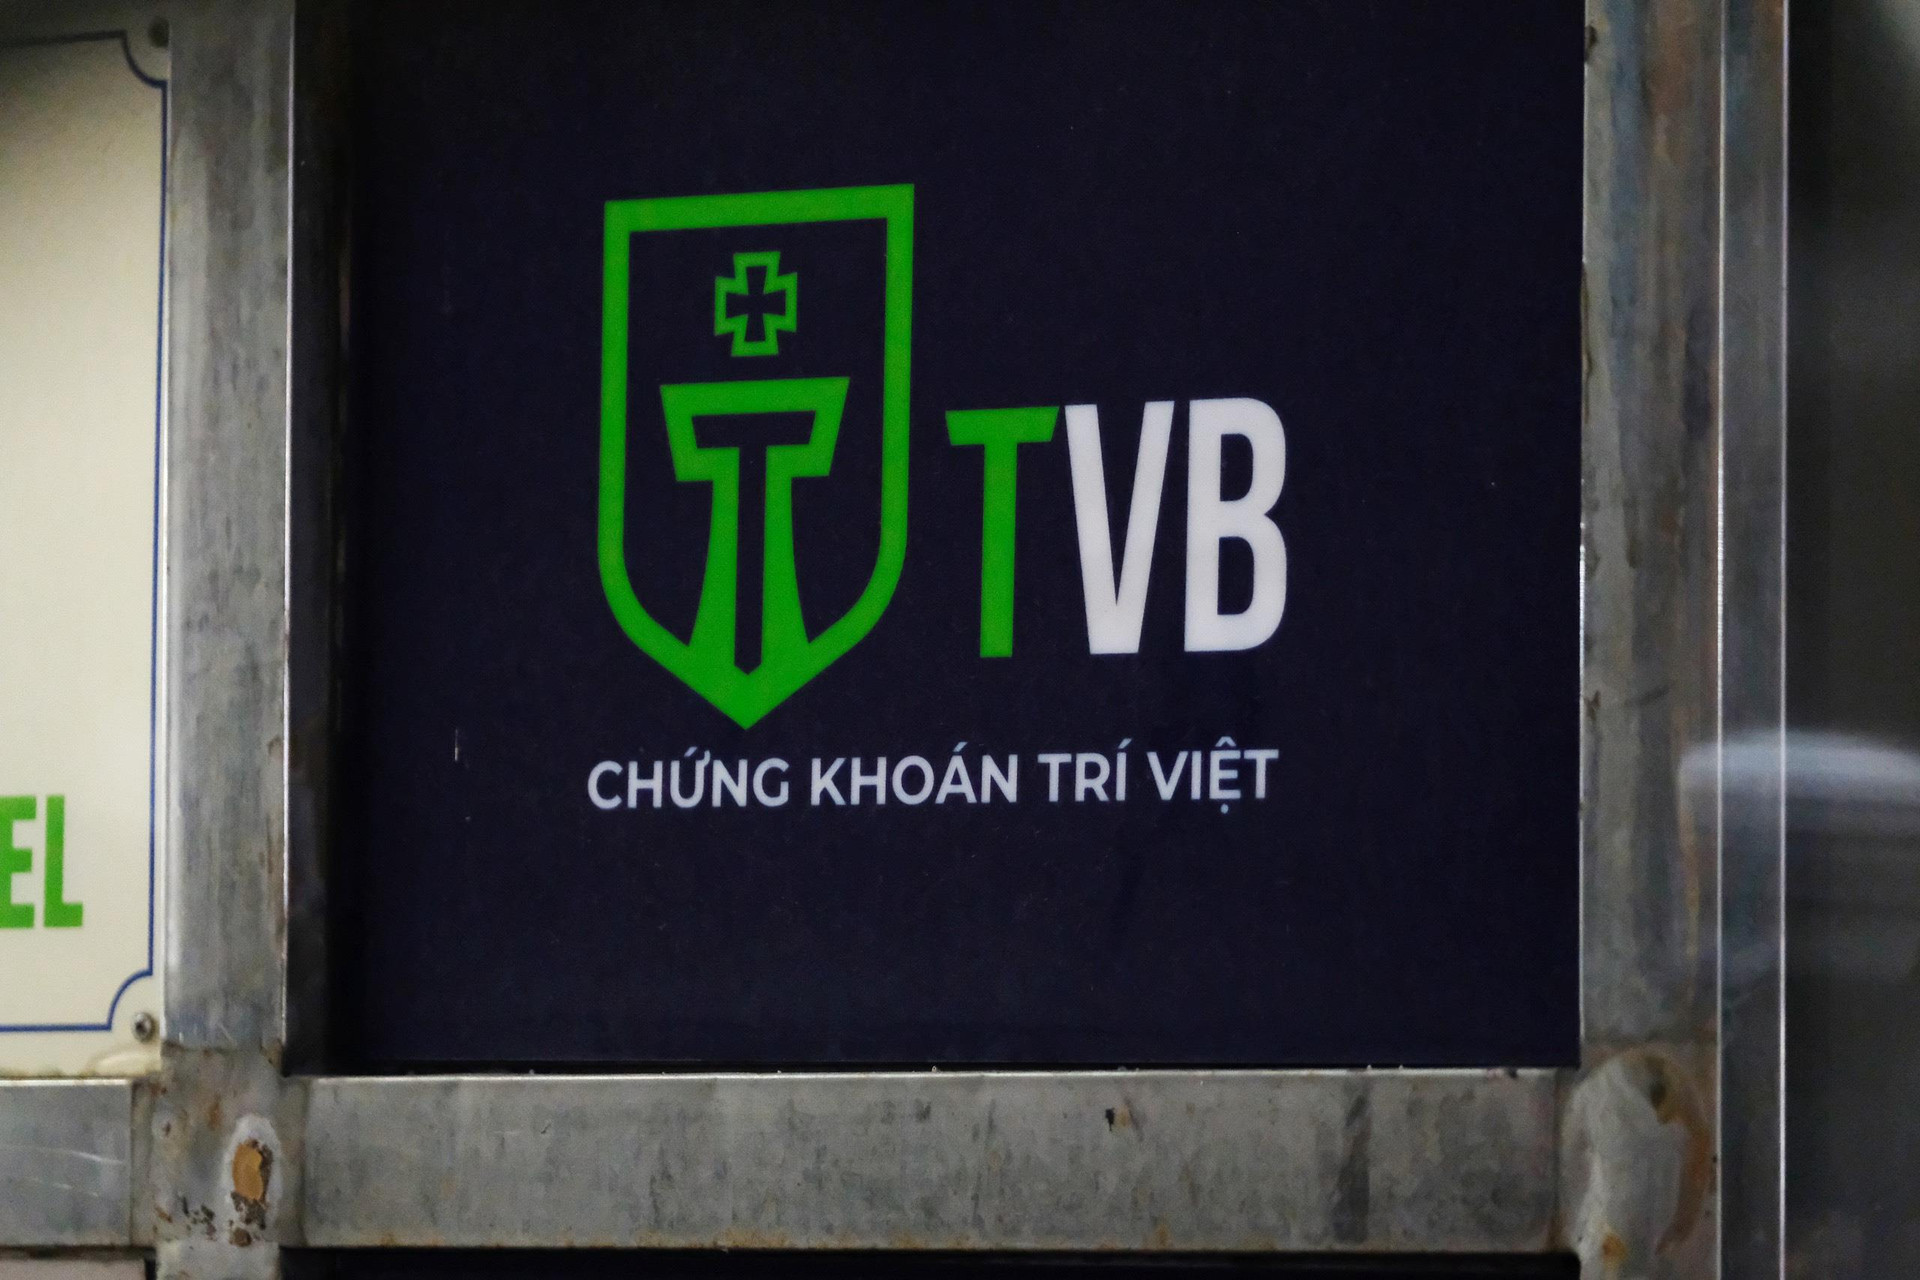 Chứng khoán Trí Việt (TVB) muốn mua lại 2,5 triệu cổ phiếu từ người lao động nghỉ việc với giá gấp đôi trên sàn - Ảnh 1.